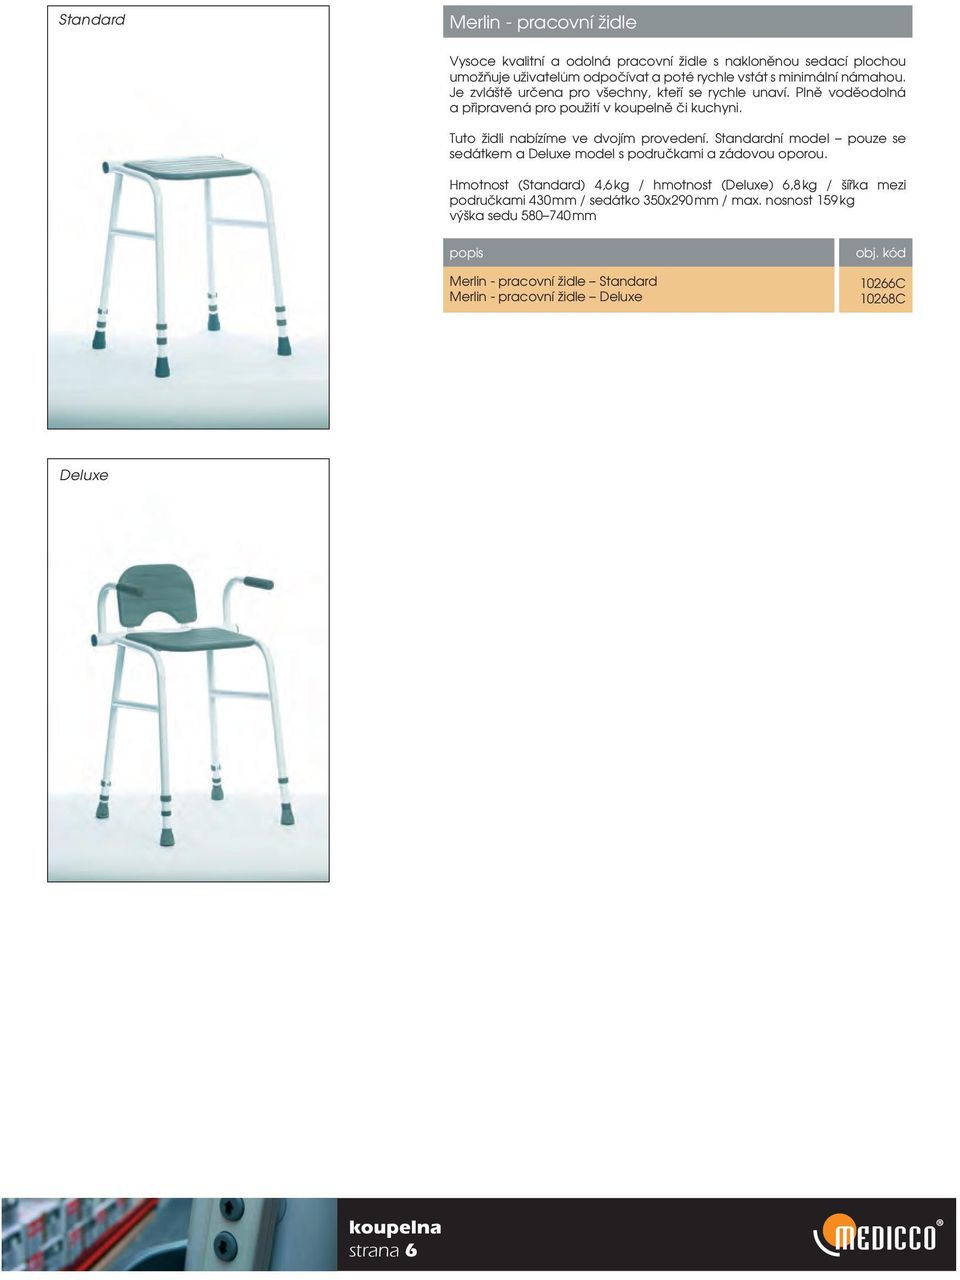 Tuto židli nabízíme ve dvojím provedení. Standardní model pouze se sedátkem a Deluxe model s područkami a zádovou oporou.